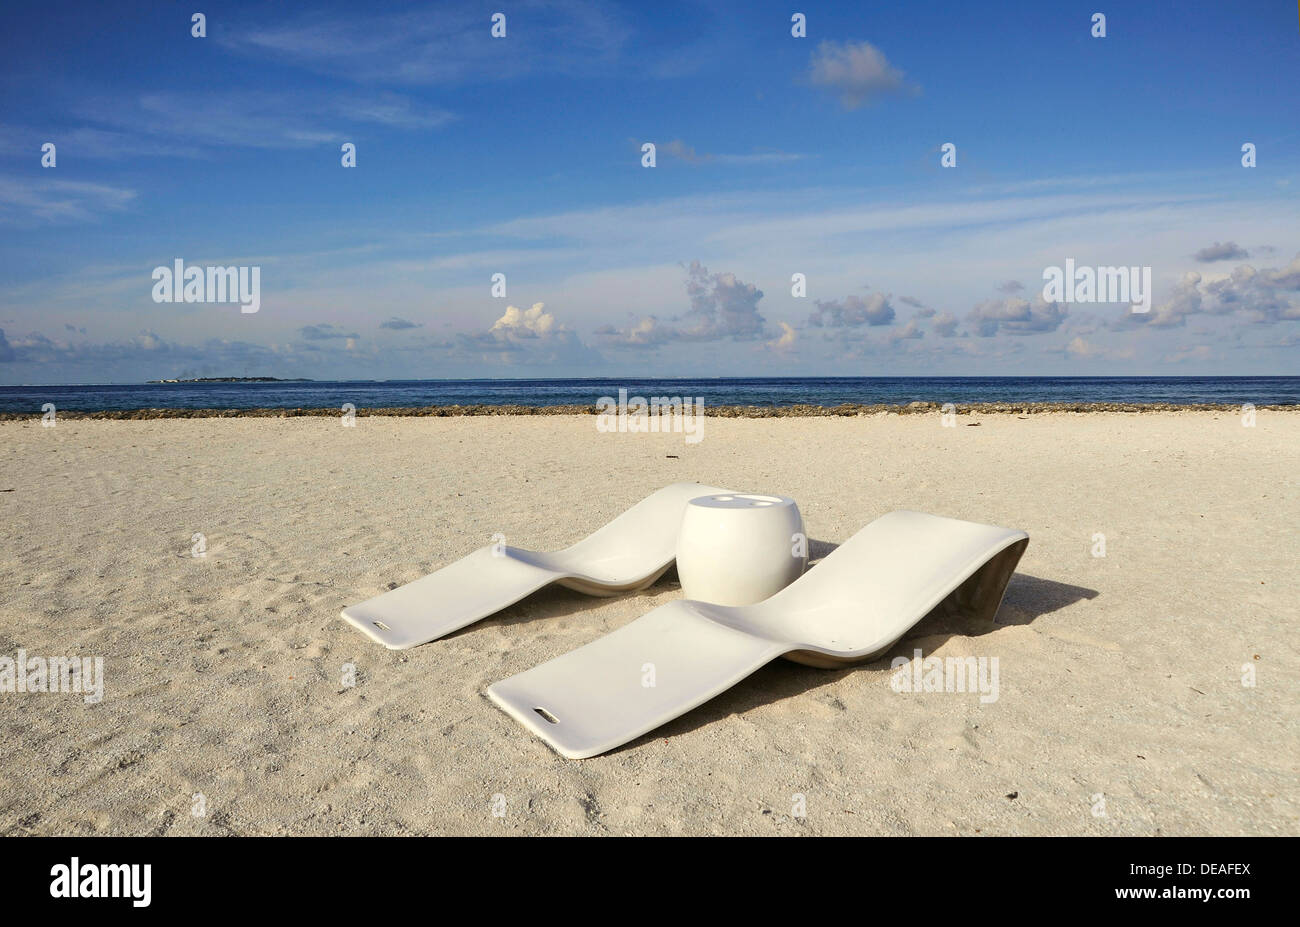 Deux chaises longues sur une plage tropicale préservée, Maldives, océan Indien Banque D'Images